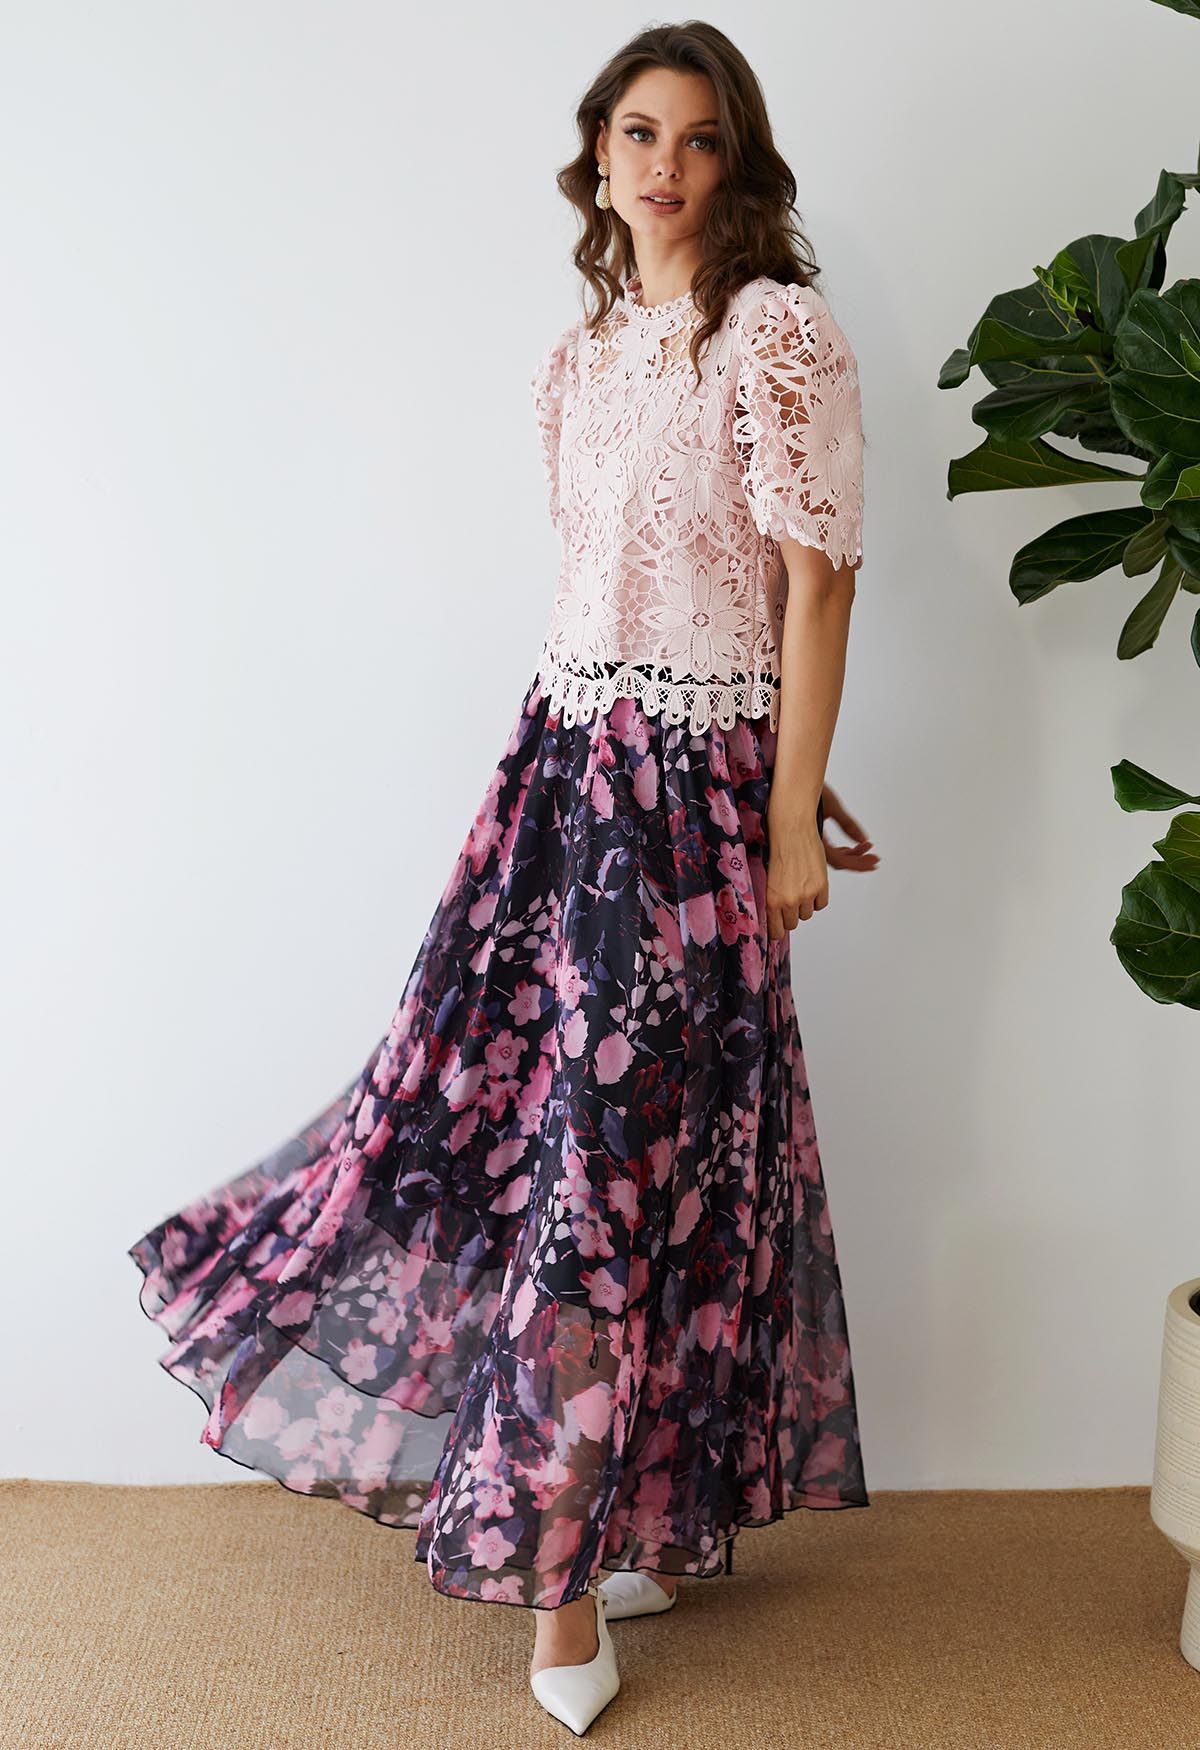 Superbe jupe longue en mousseline de soie aquarelle florale rose